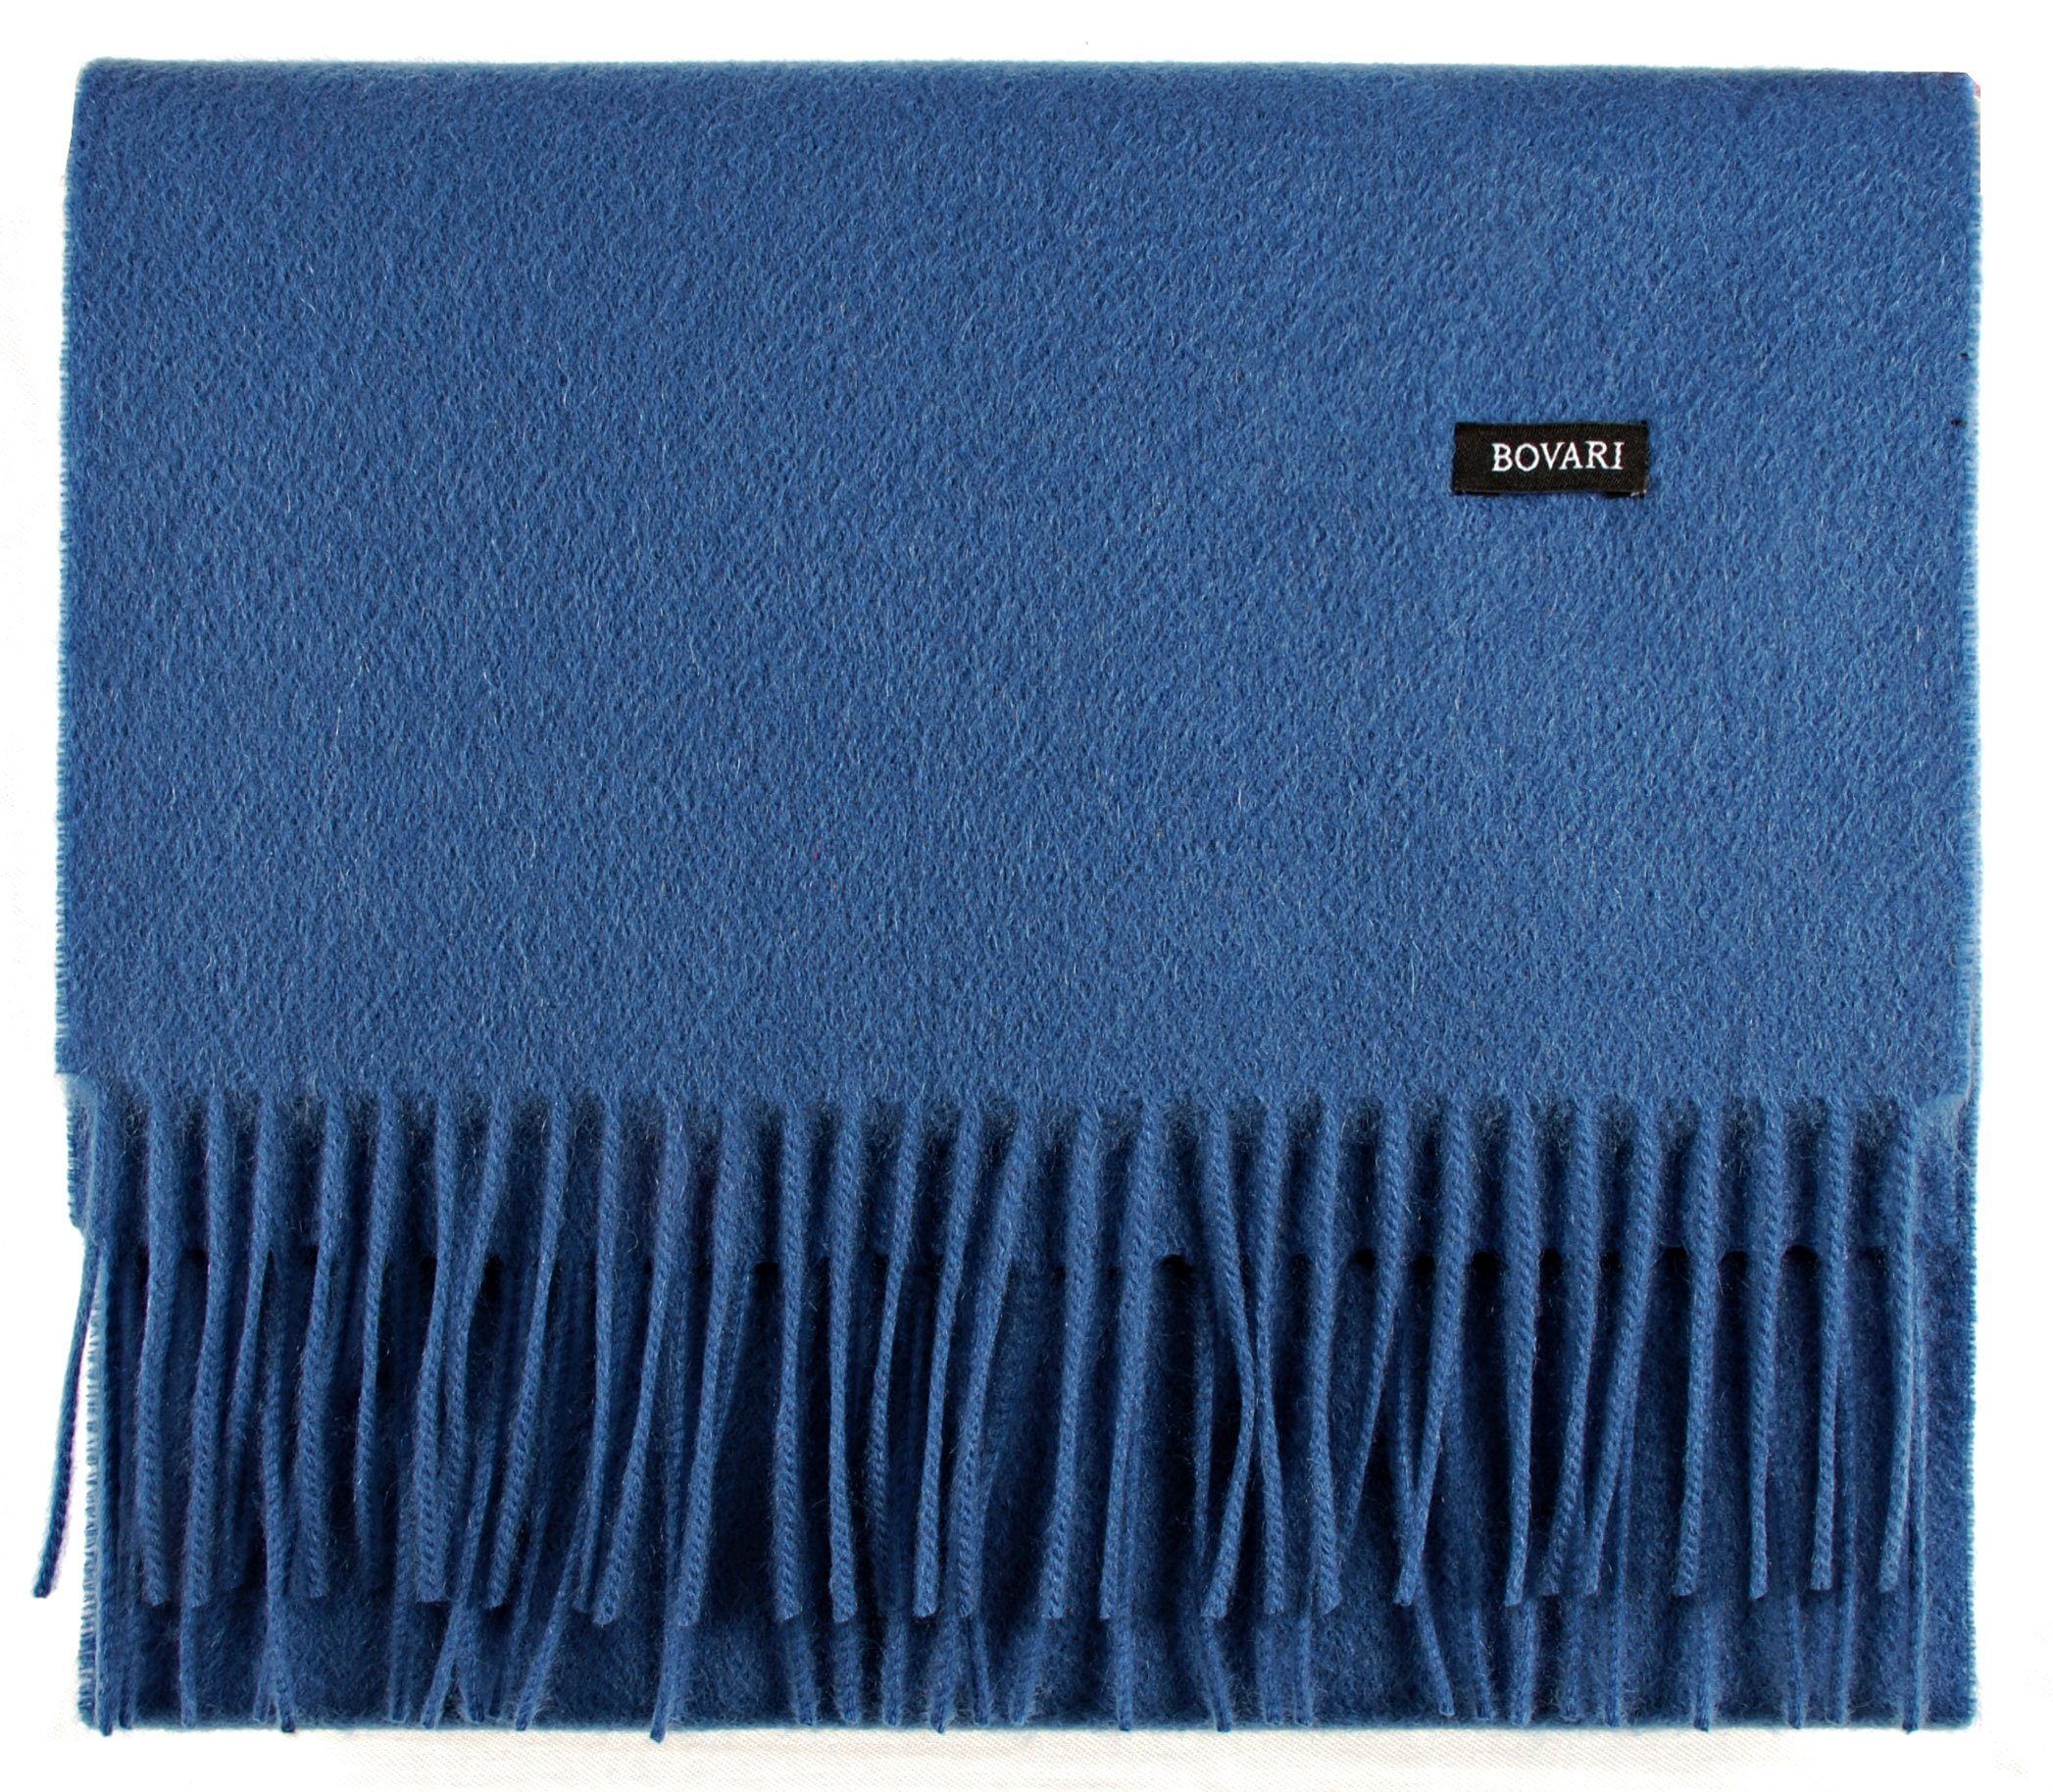 Bovari Kaschmirschal Kaschmir Schal Herren – 100% Kaschmir / Cashmere – Premium Qualität, 180 x 31 cm blau / classic blue